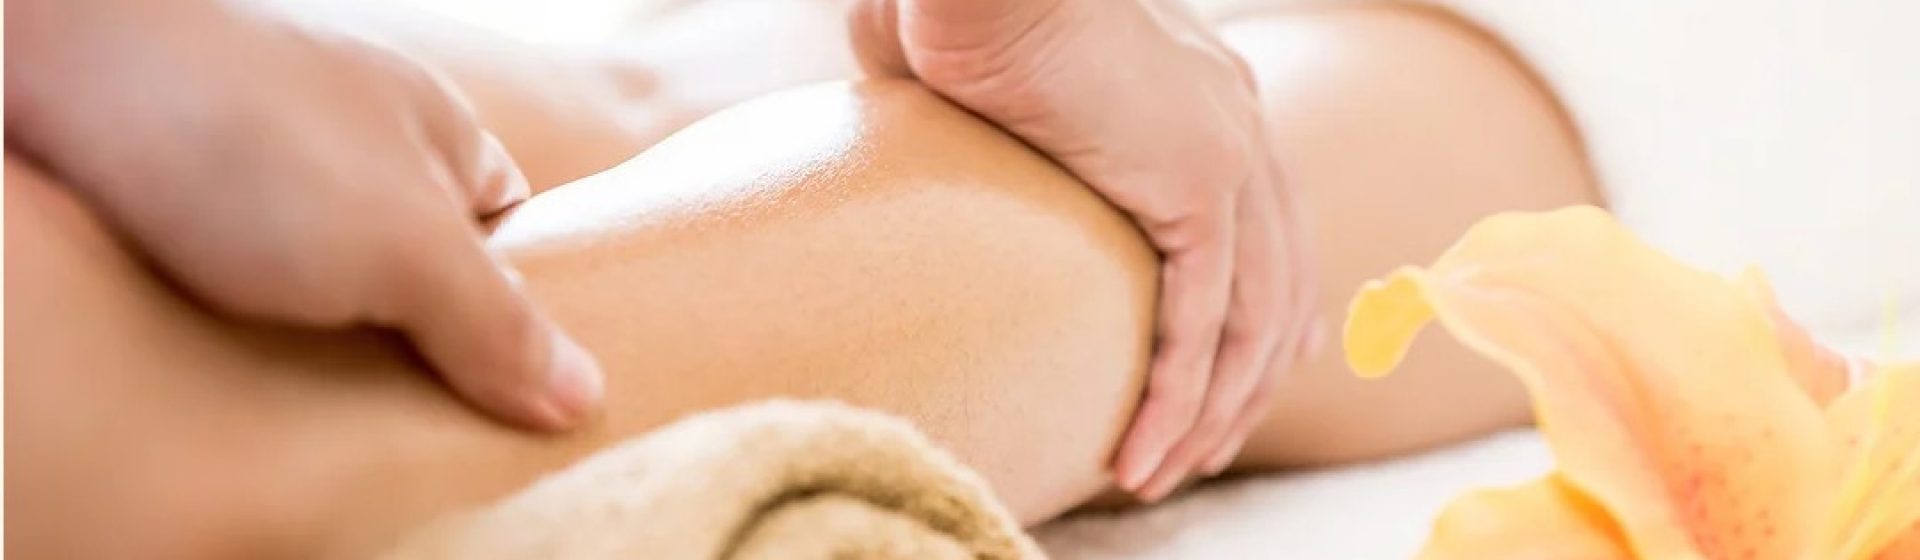 Service de massage à Poitiers – Touchard Claire